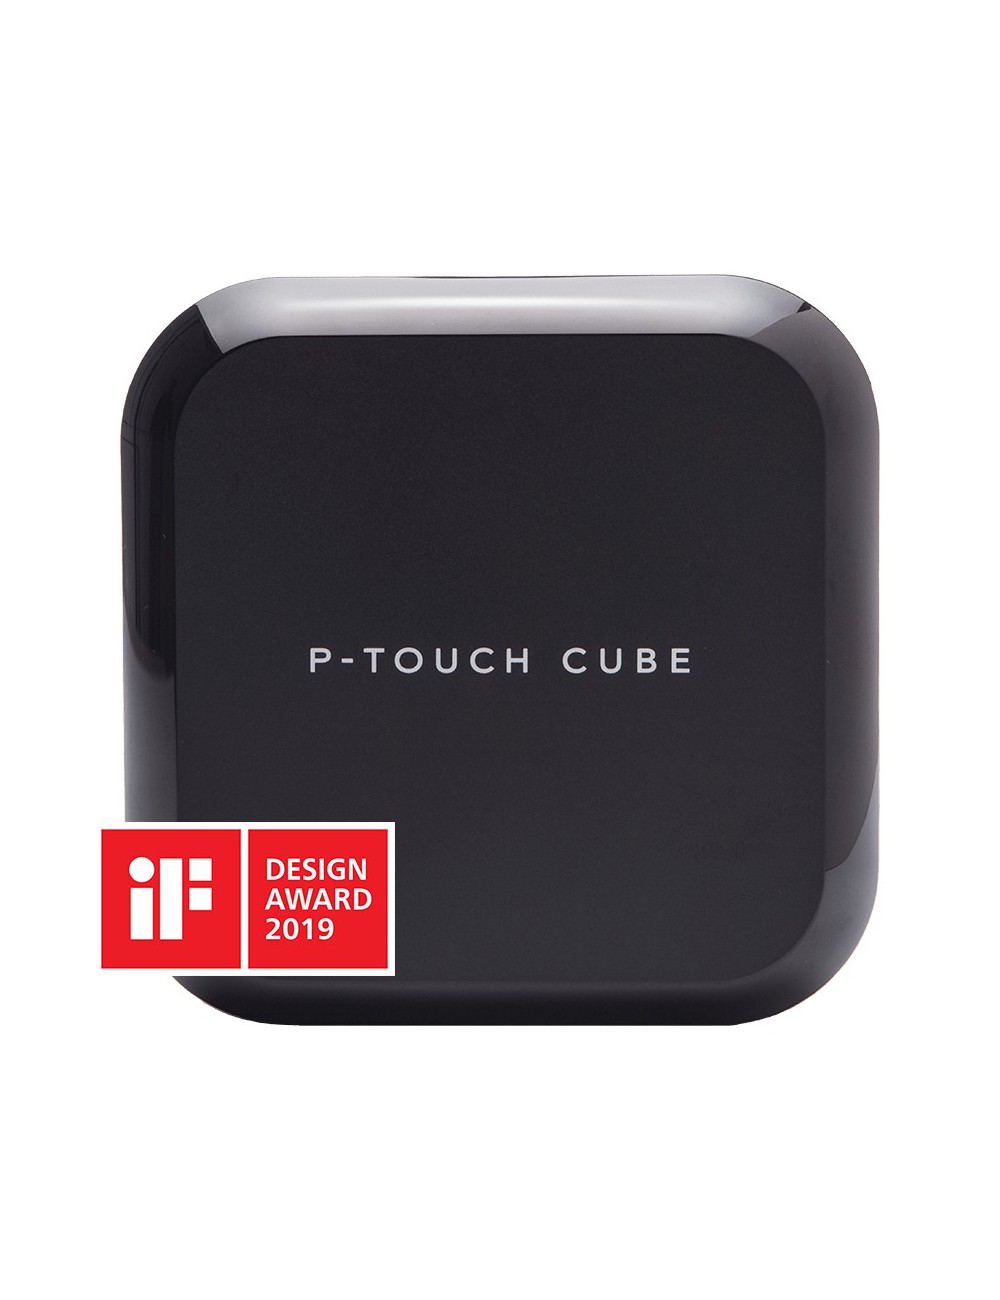 Brother PT-P710BT - P-touch CUBE Plus - imprimante d’étiquettes rechargeable Bluetooth